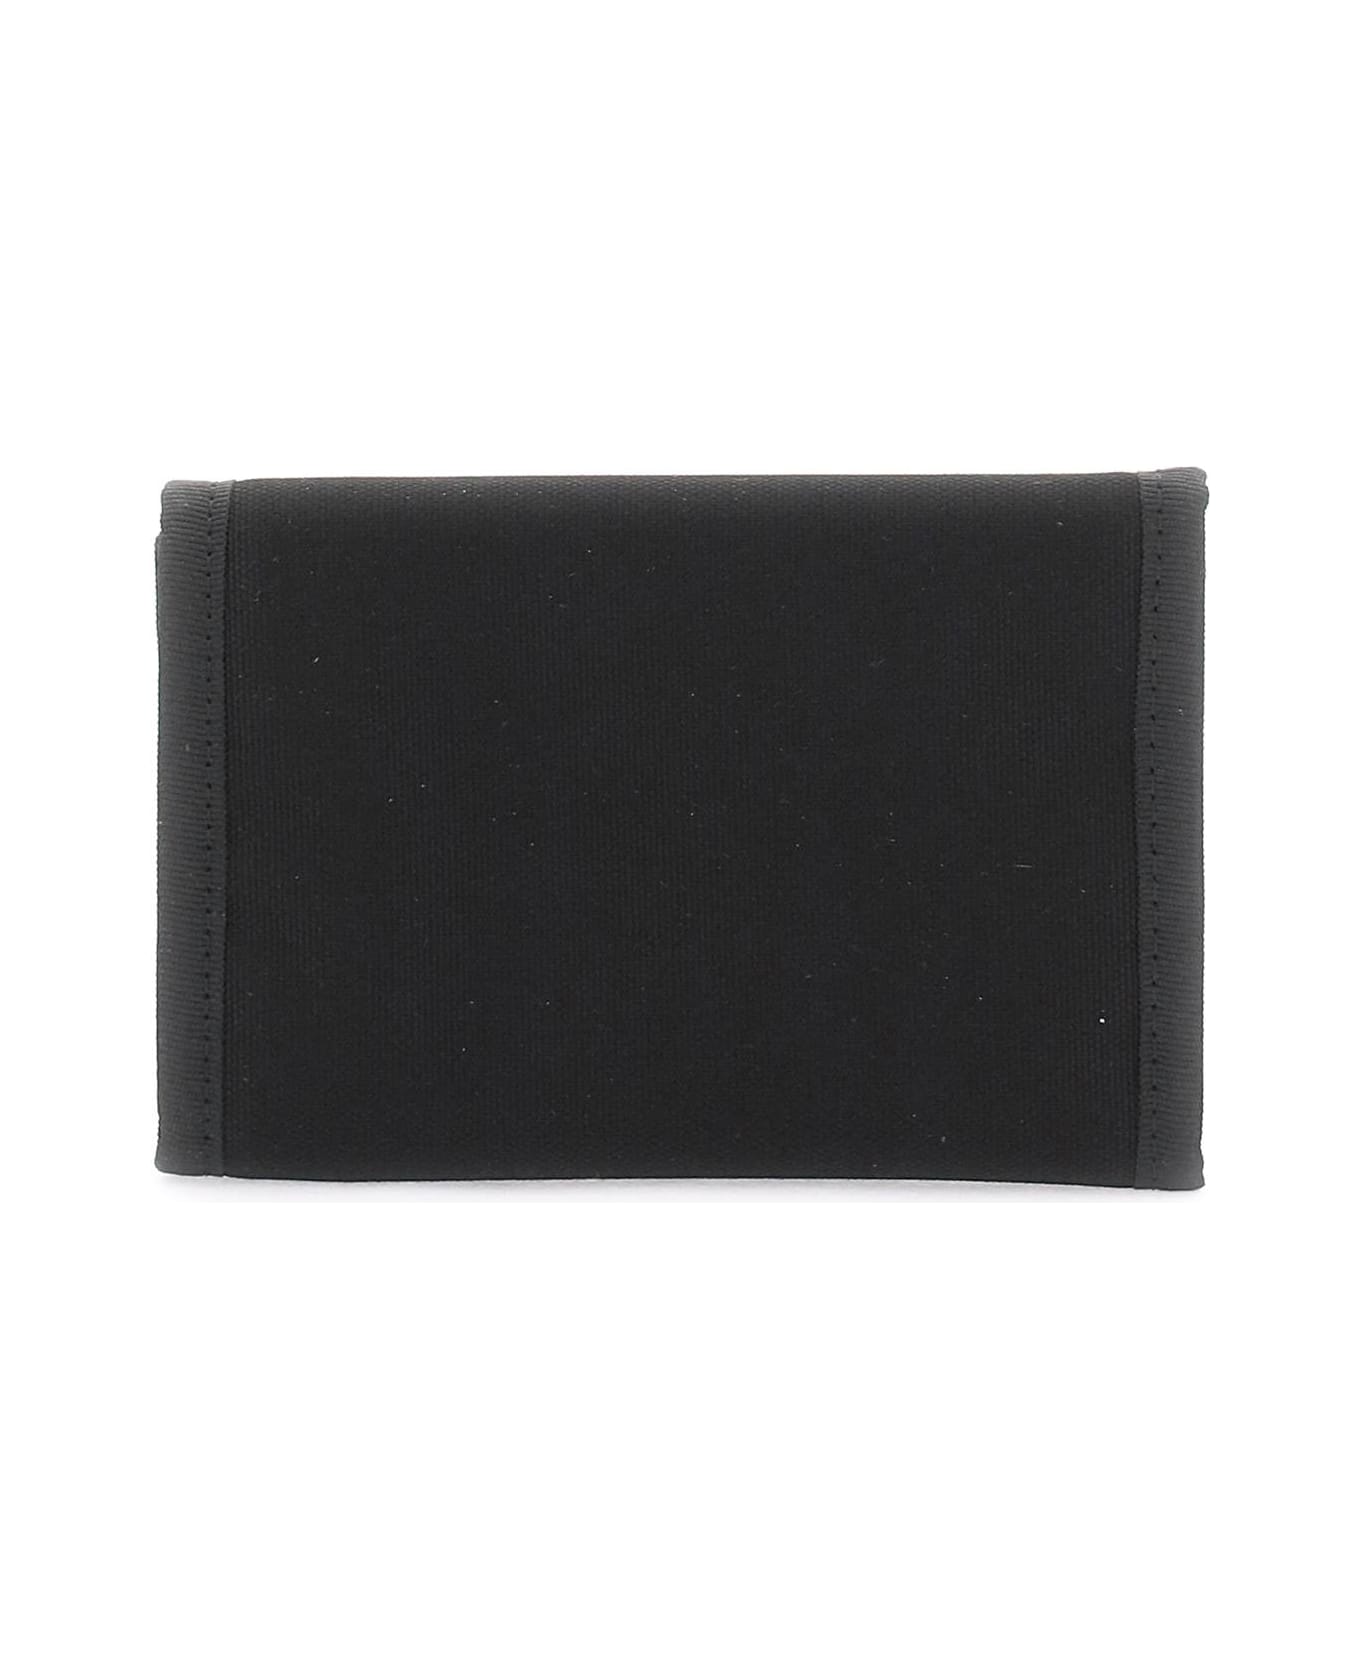 Carhartt 'alec' Tri-fold Wallet - BLACK 財布